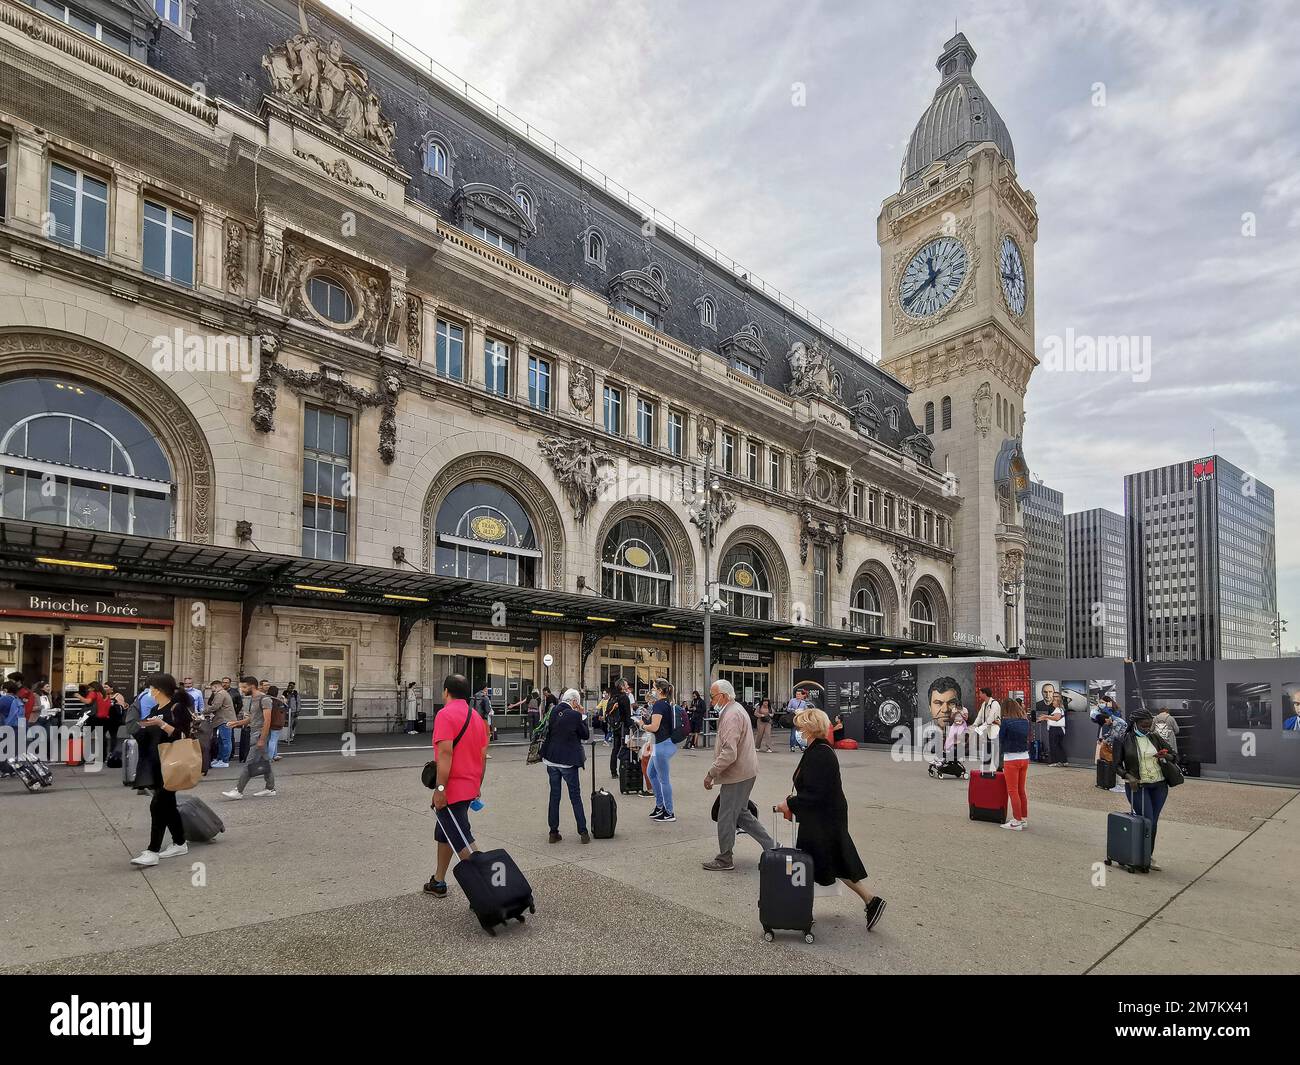 Francia, París, la estación de tren Gare de Lyon Foto © Fabio Mazzarella/Sintesi/Alamy Foto de archivo Foto de stock